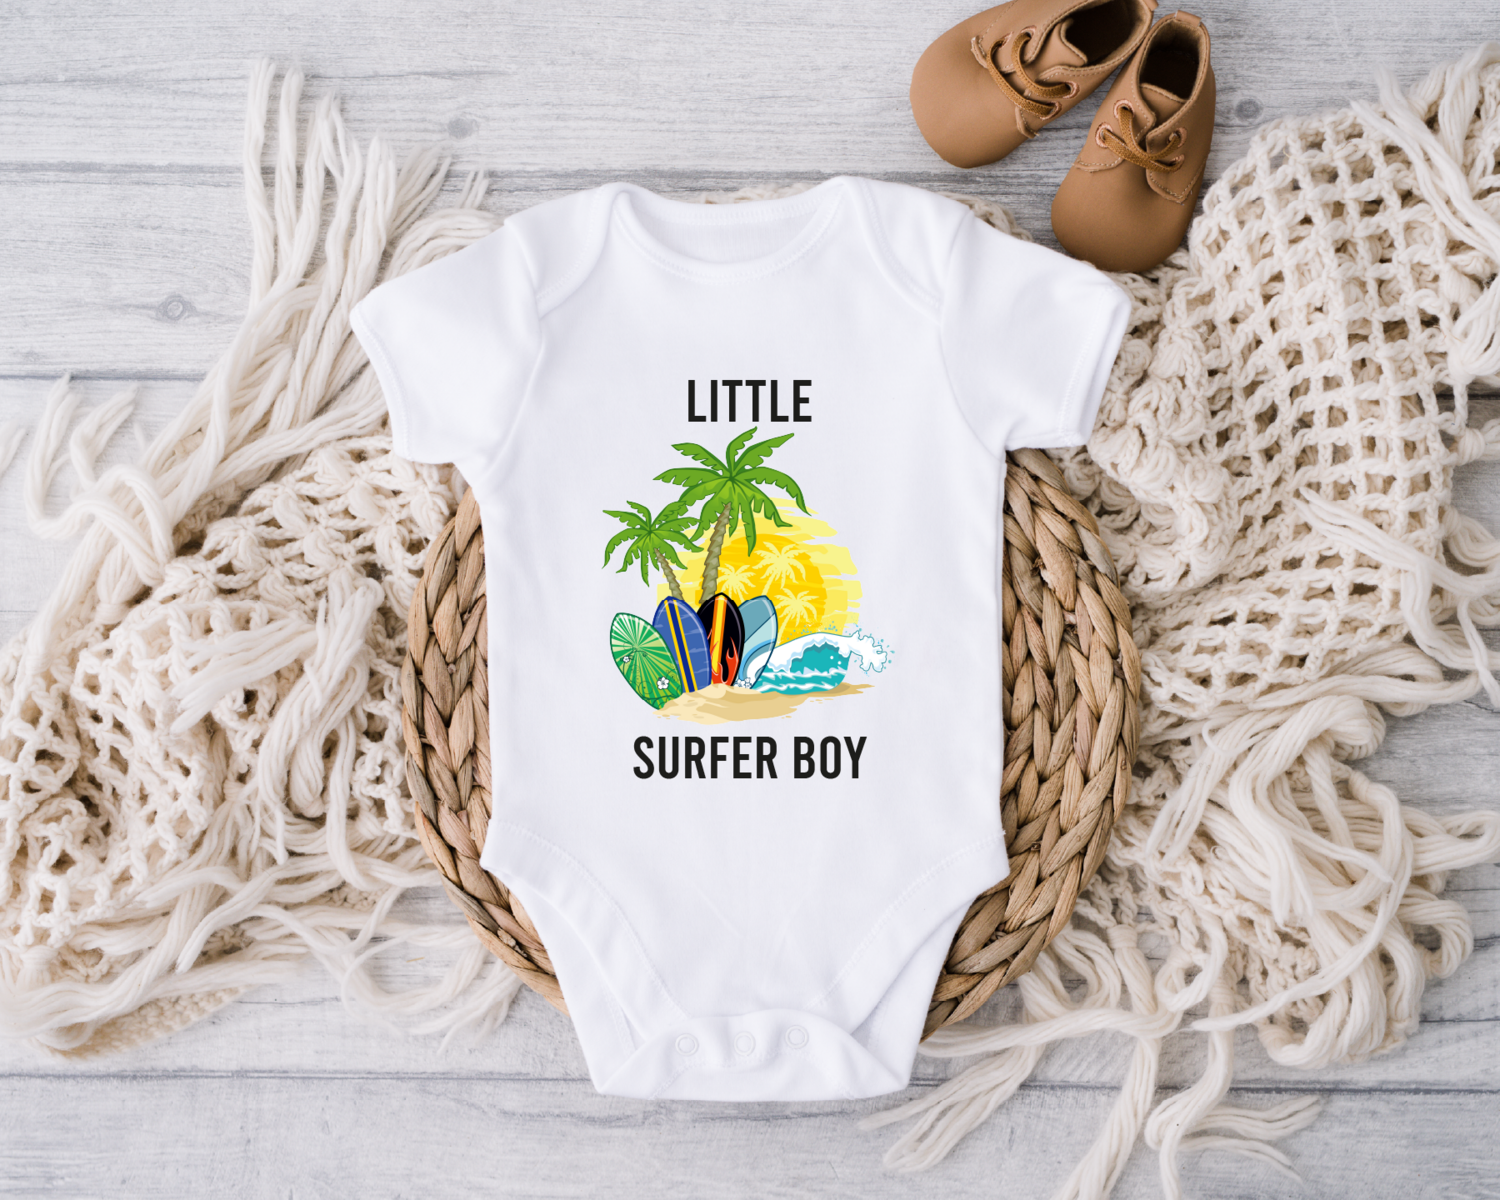 Little Surfer Boy Onesie, Baby Clothes